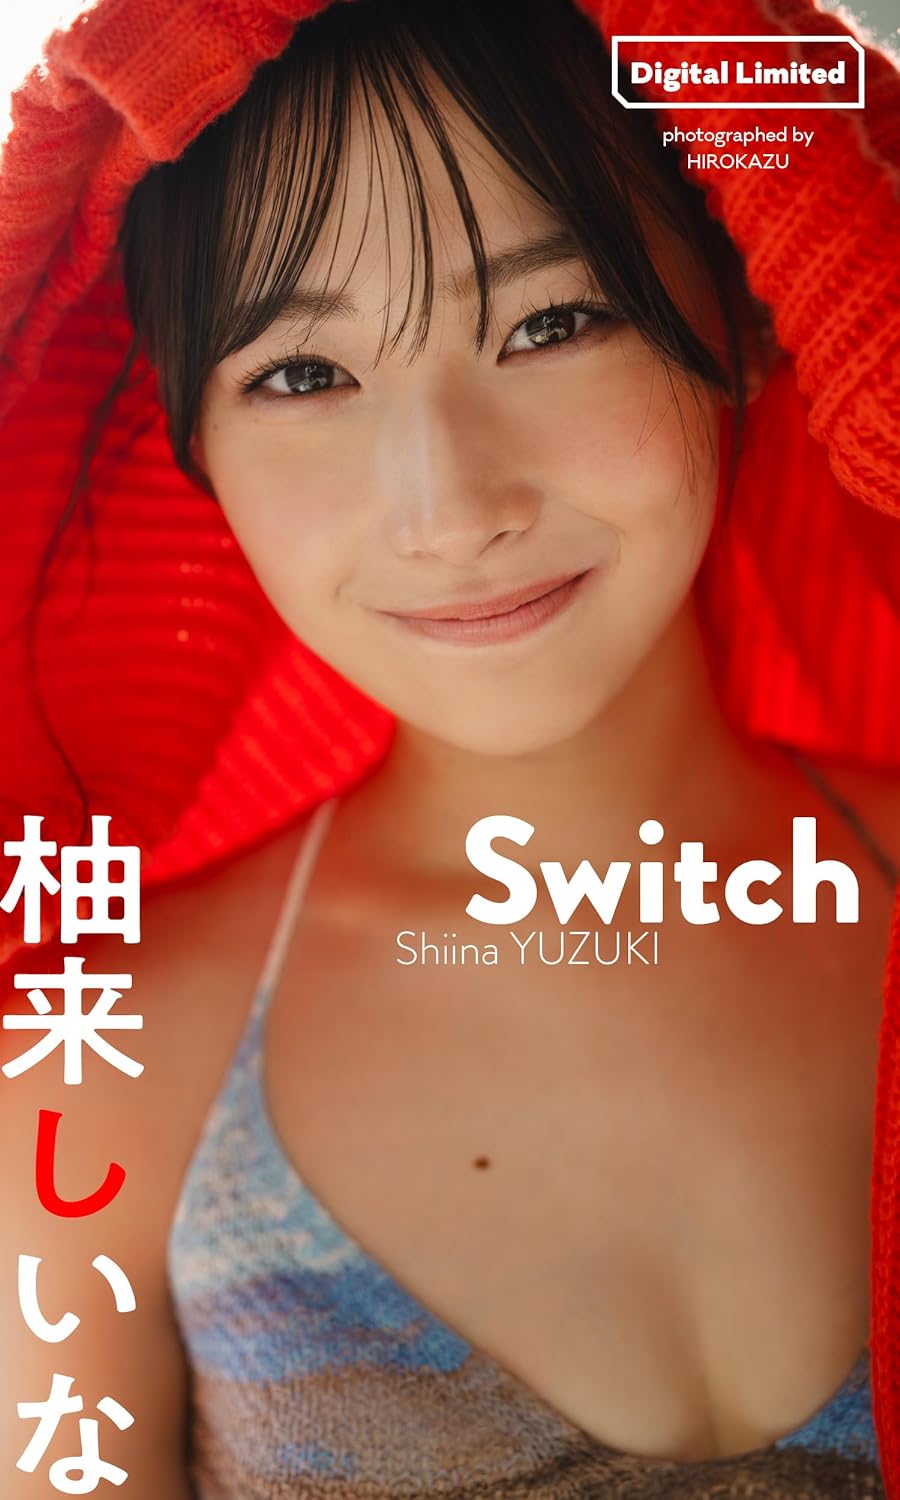 【デジタル限定】柚来しいな写真集「Switch」 週プレ PHOTO BOOK Kindle版のサンプル画像